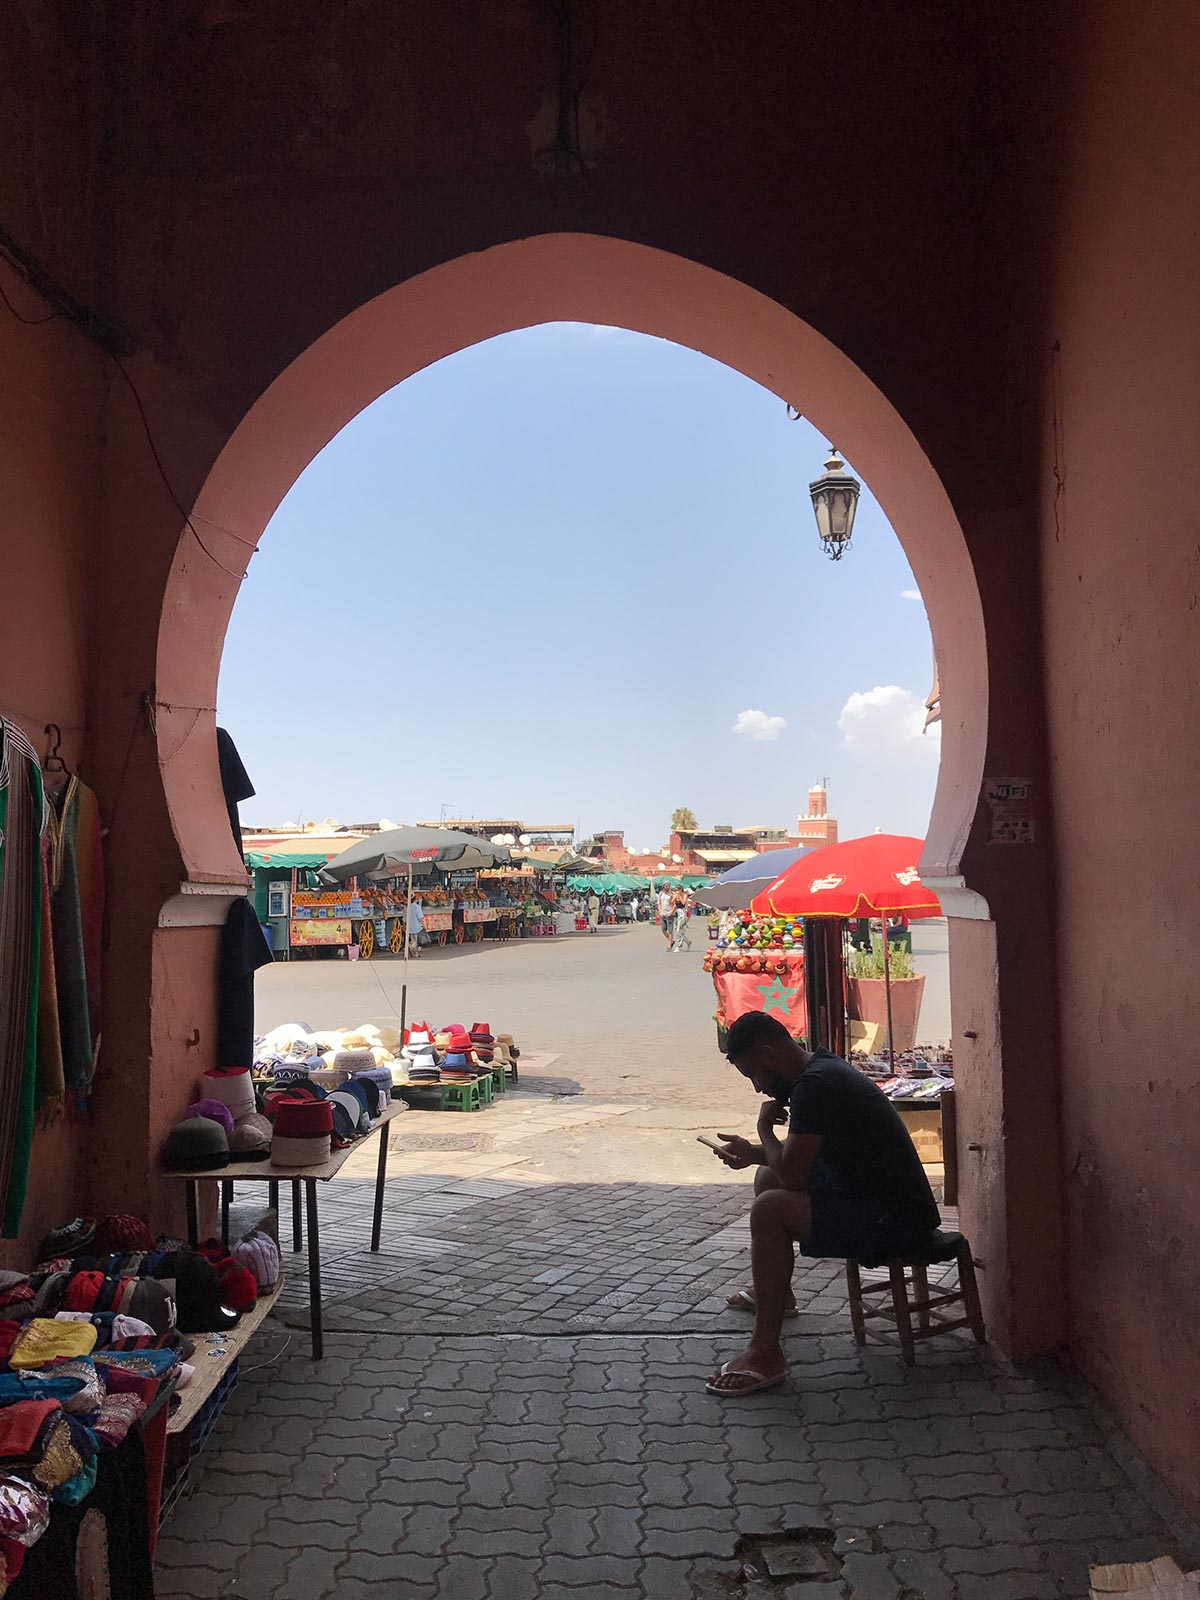 A vendor in Marrakesh, Morocco. Arriving into Marrakesh